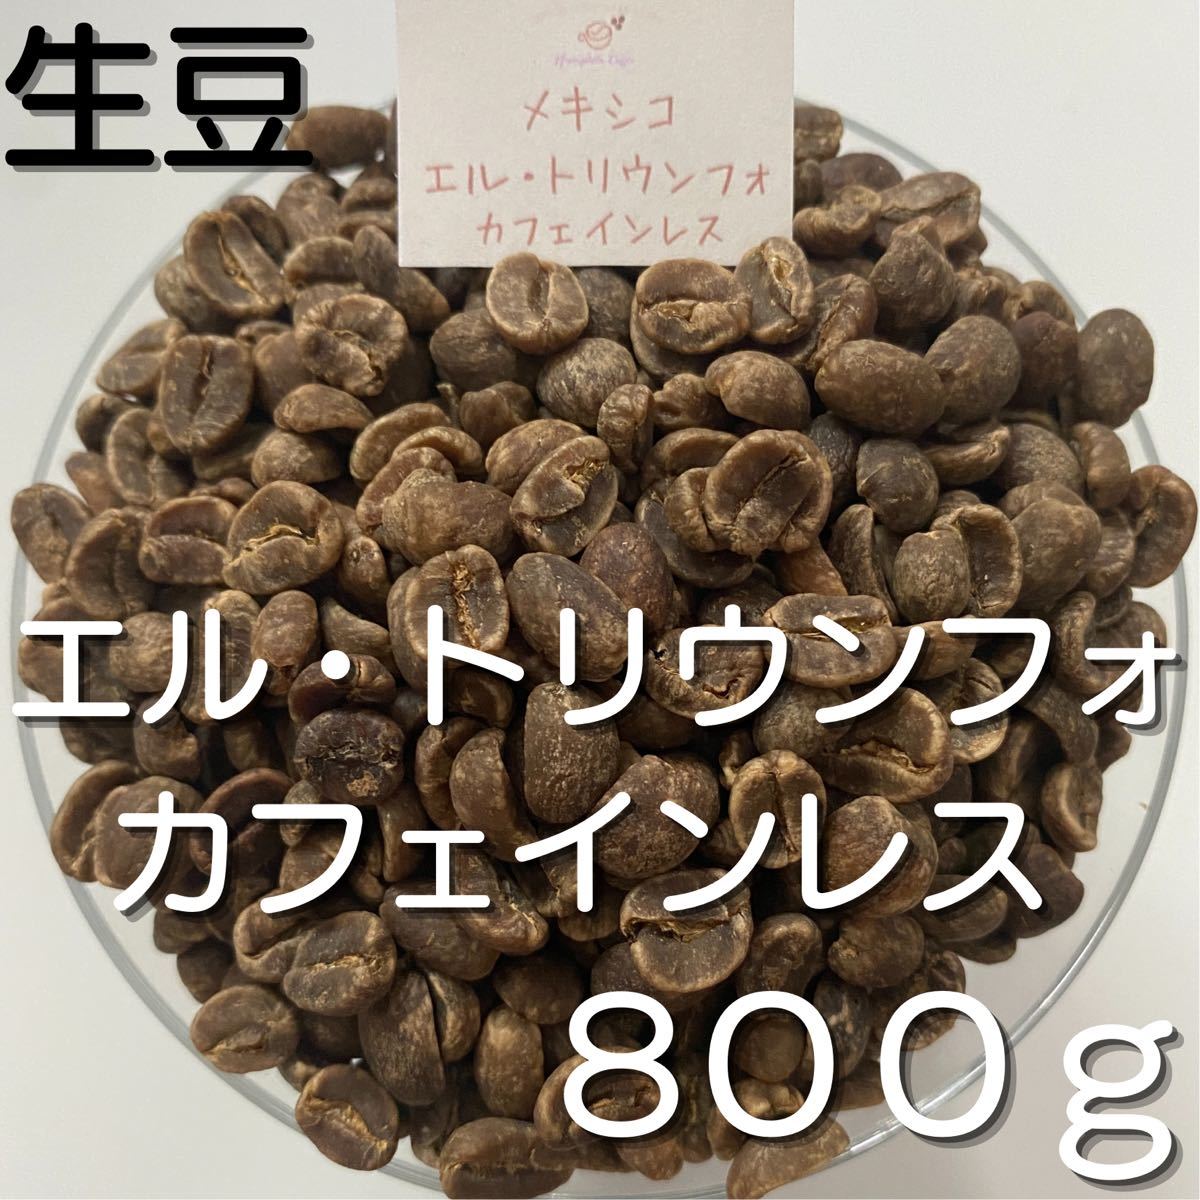 【コーヒー生豆】エル・トリウンフォ カフェインレス 800g